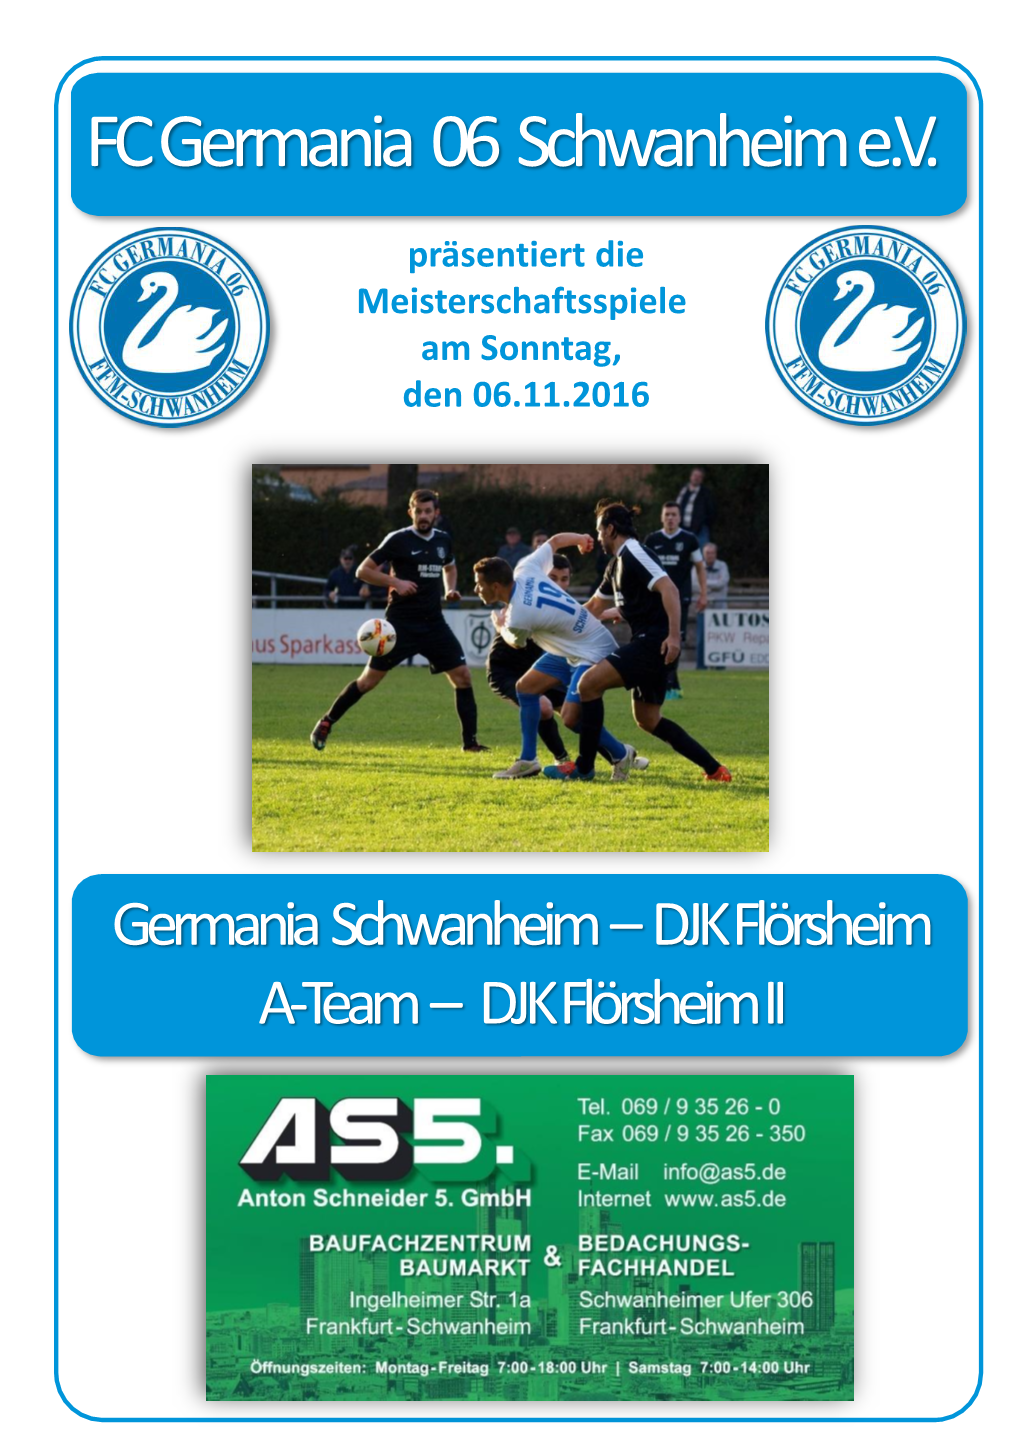 FC Germania 06 Schwanheim E.V